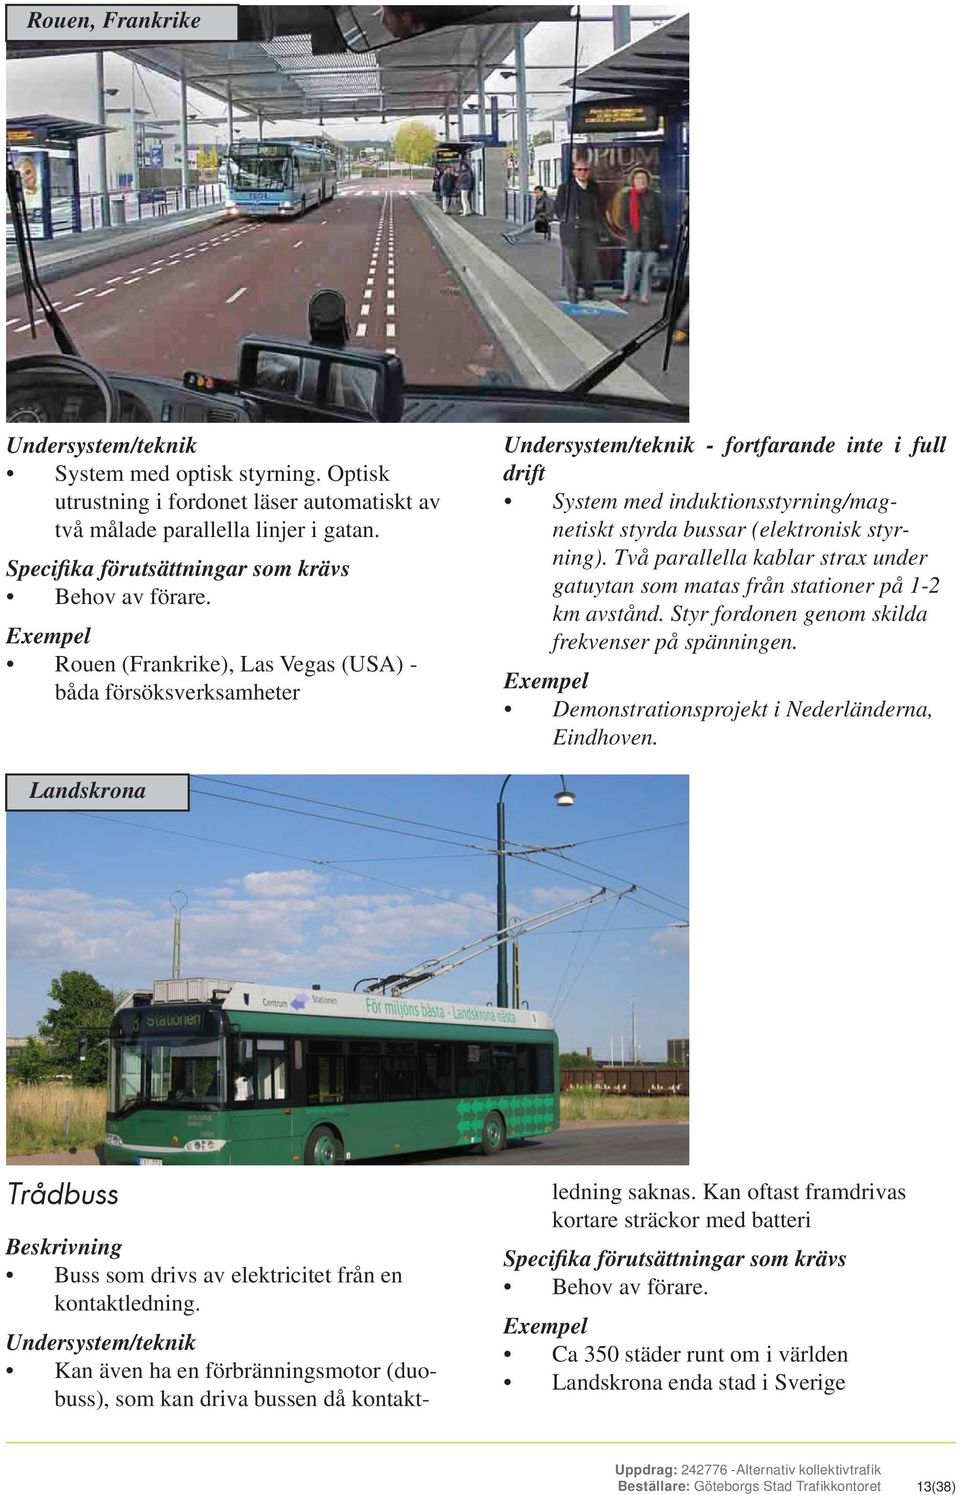 Exempel Rouen (Frankrike), Las Vegas (USA) - båda försöksverksamheter Undersystem/teknik - fortfarande inte i full drift System med induktionsstyrning/magnetiskt styrda bussar (elektronisk styrning).